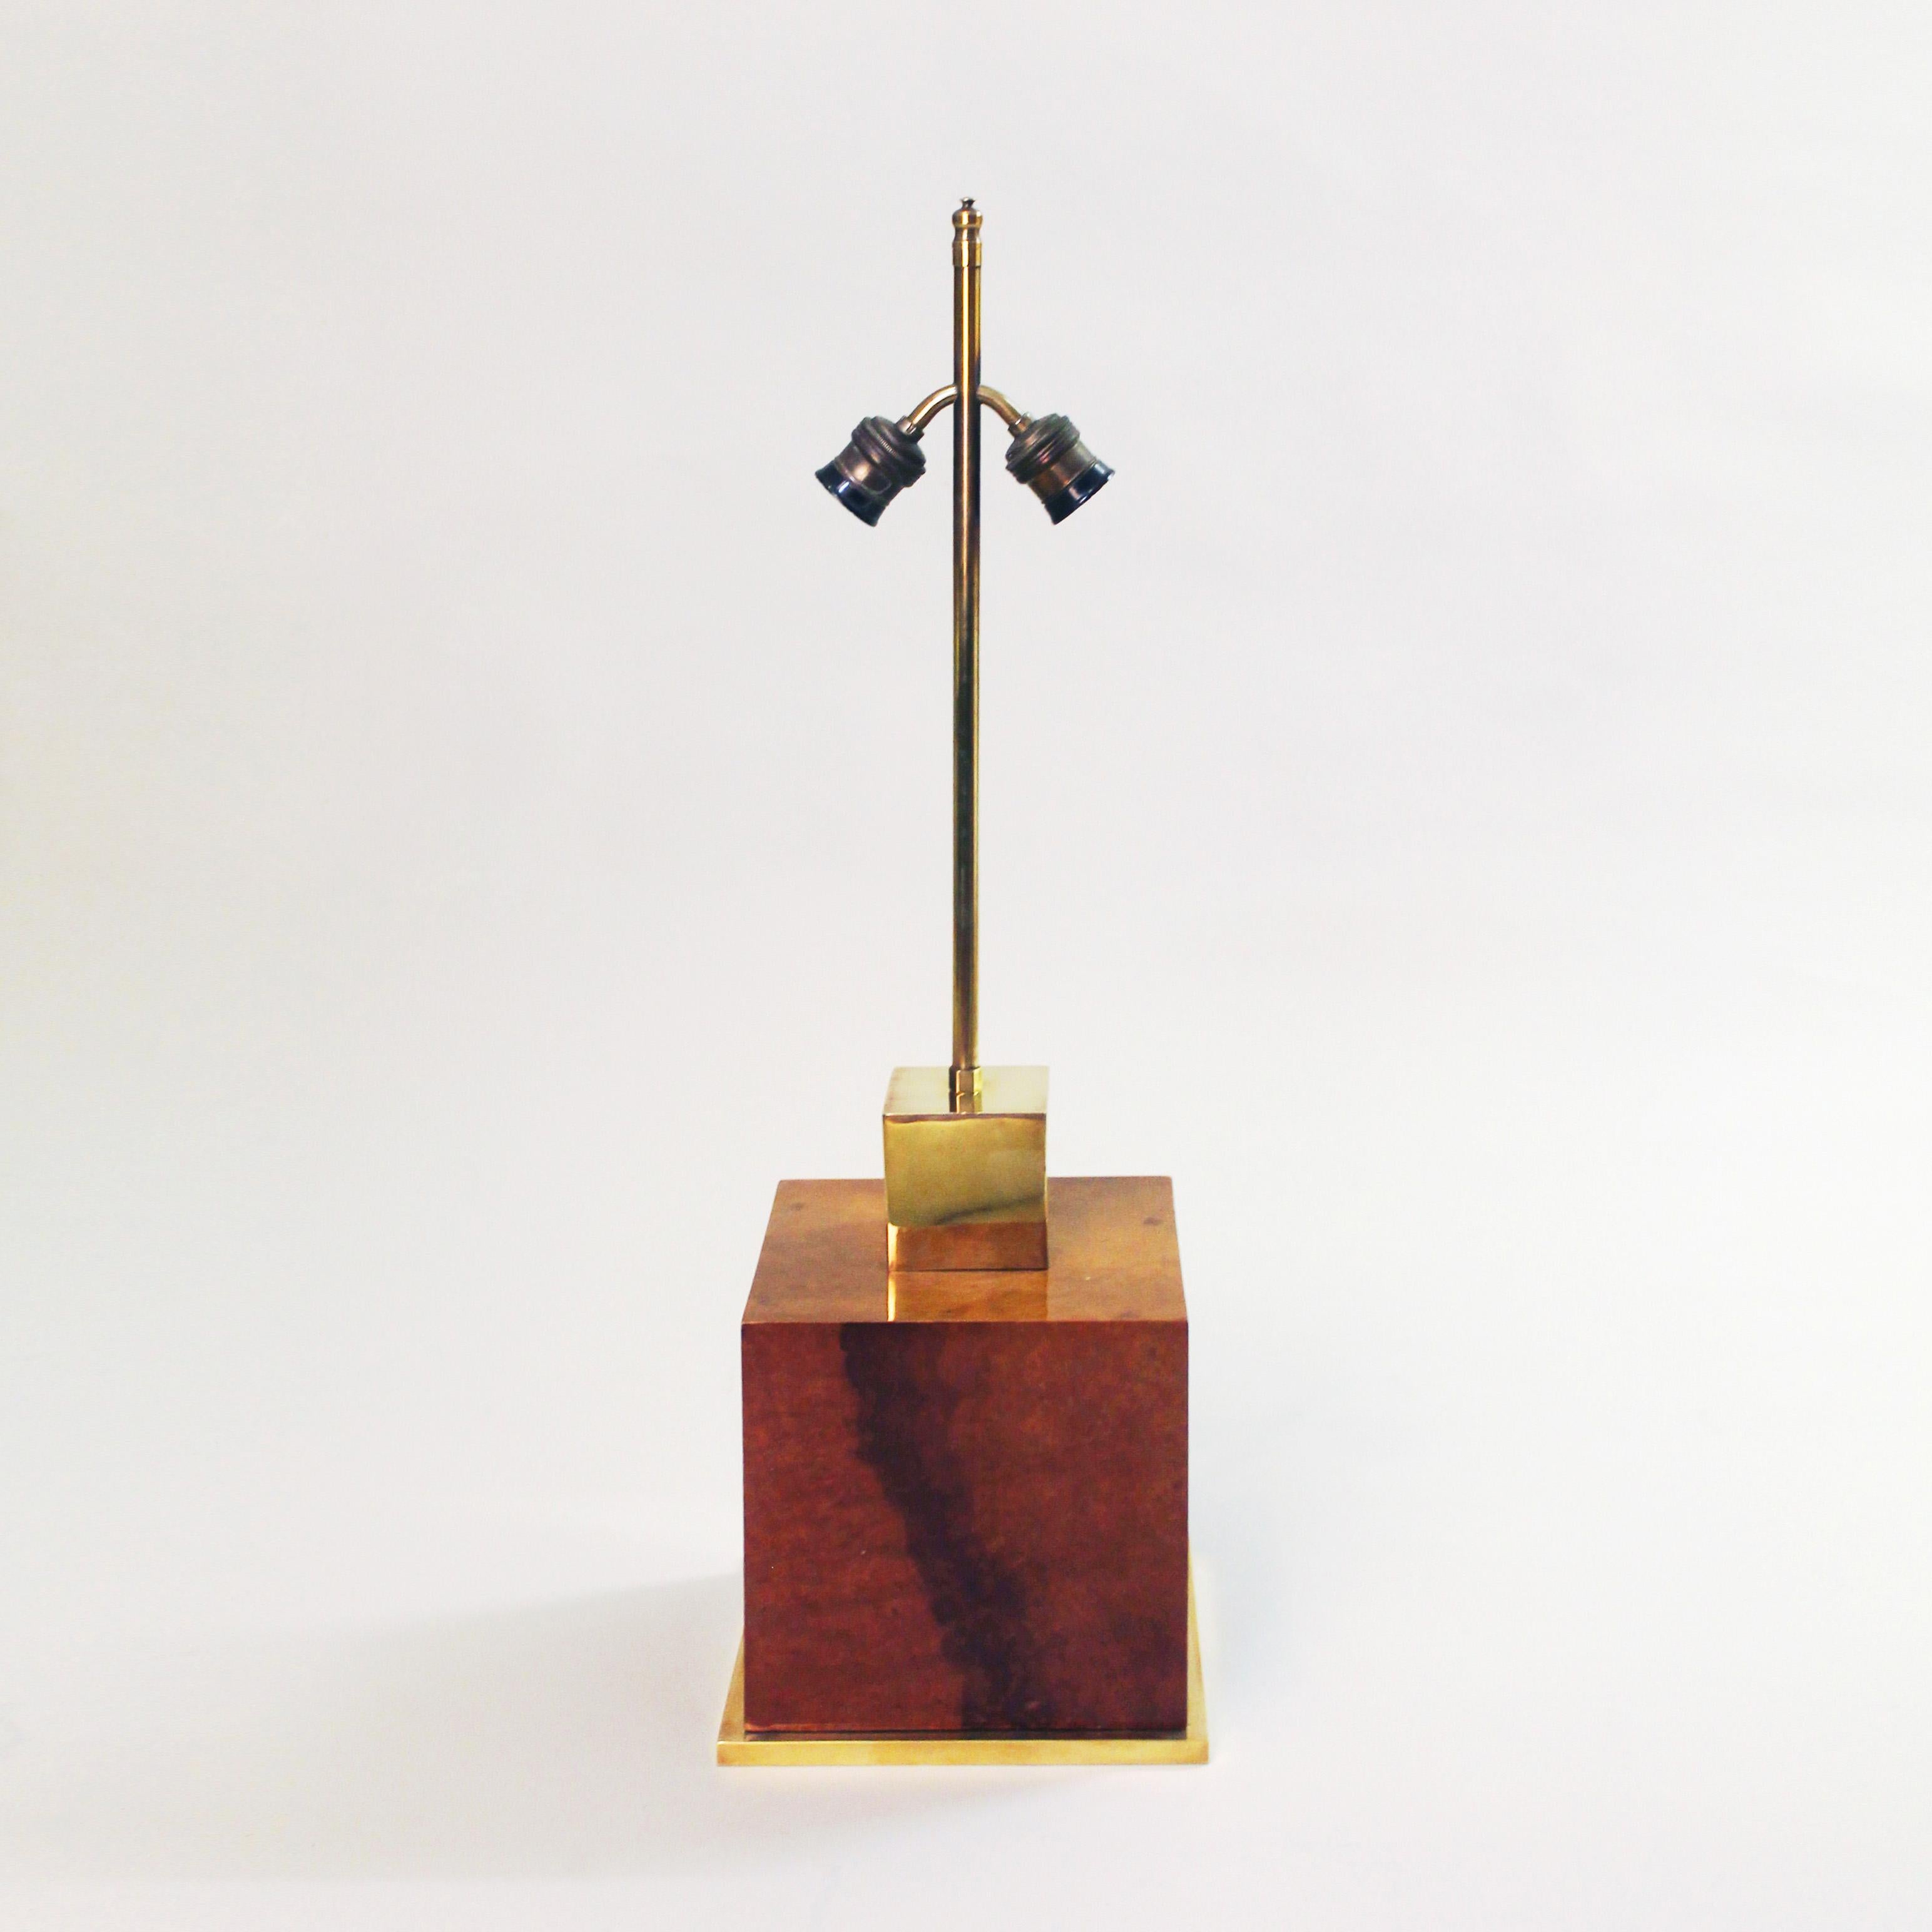 Une lampe de table simple mais étonnante de Willy Rizzo. Un grand cube laqué en ronce de noyer est flanqué d'une garniture de base en laiton et d'un cube et de finitions en laiton sur le dessus. 
Le bois de ronce est joliment assorti aux livres, ce